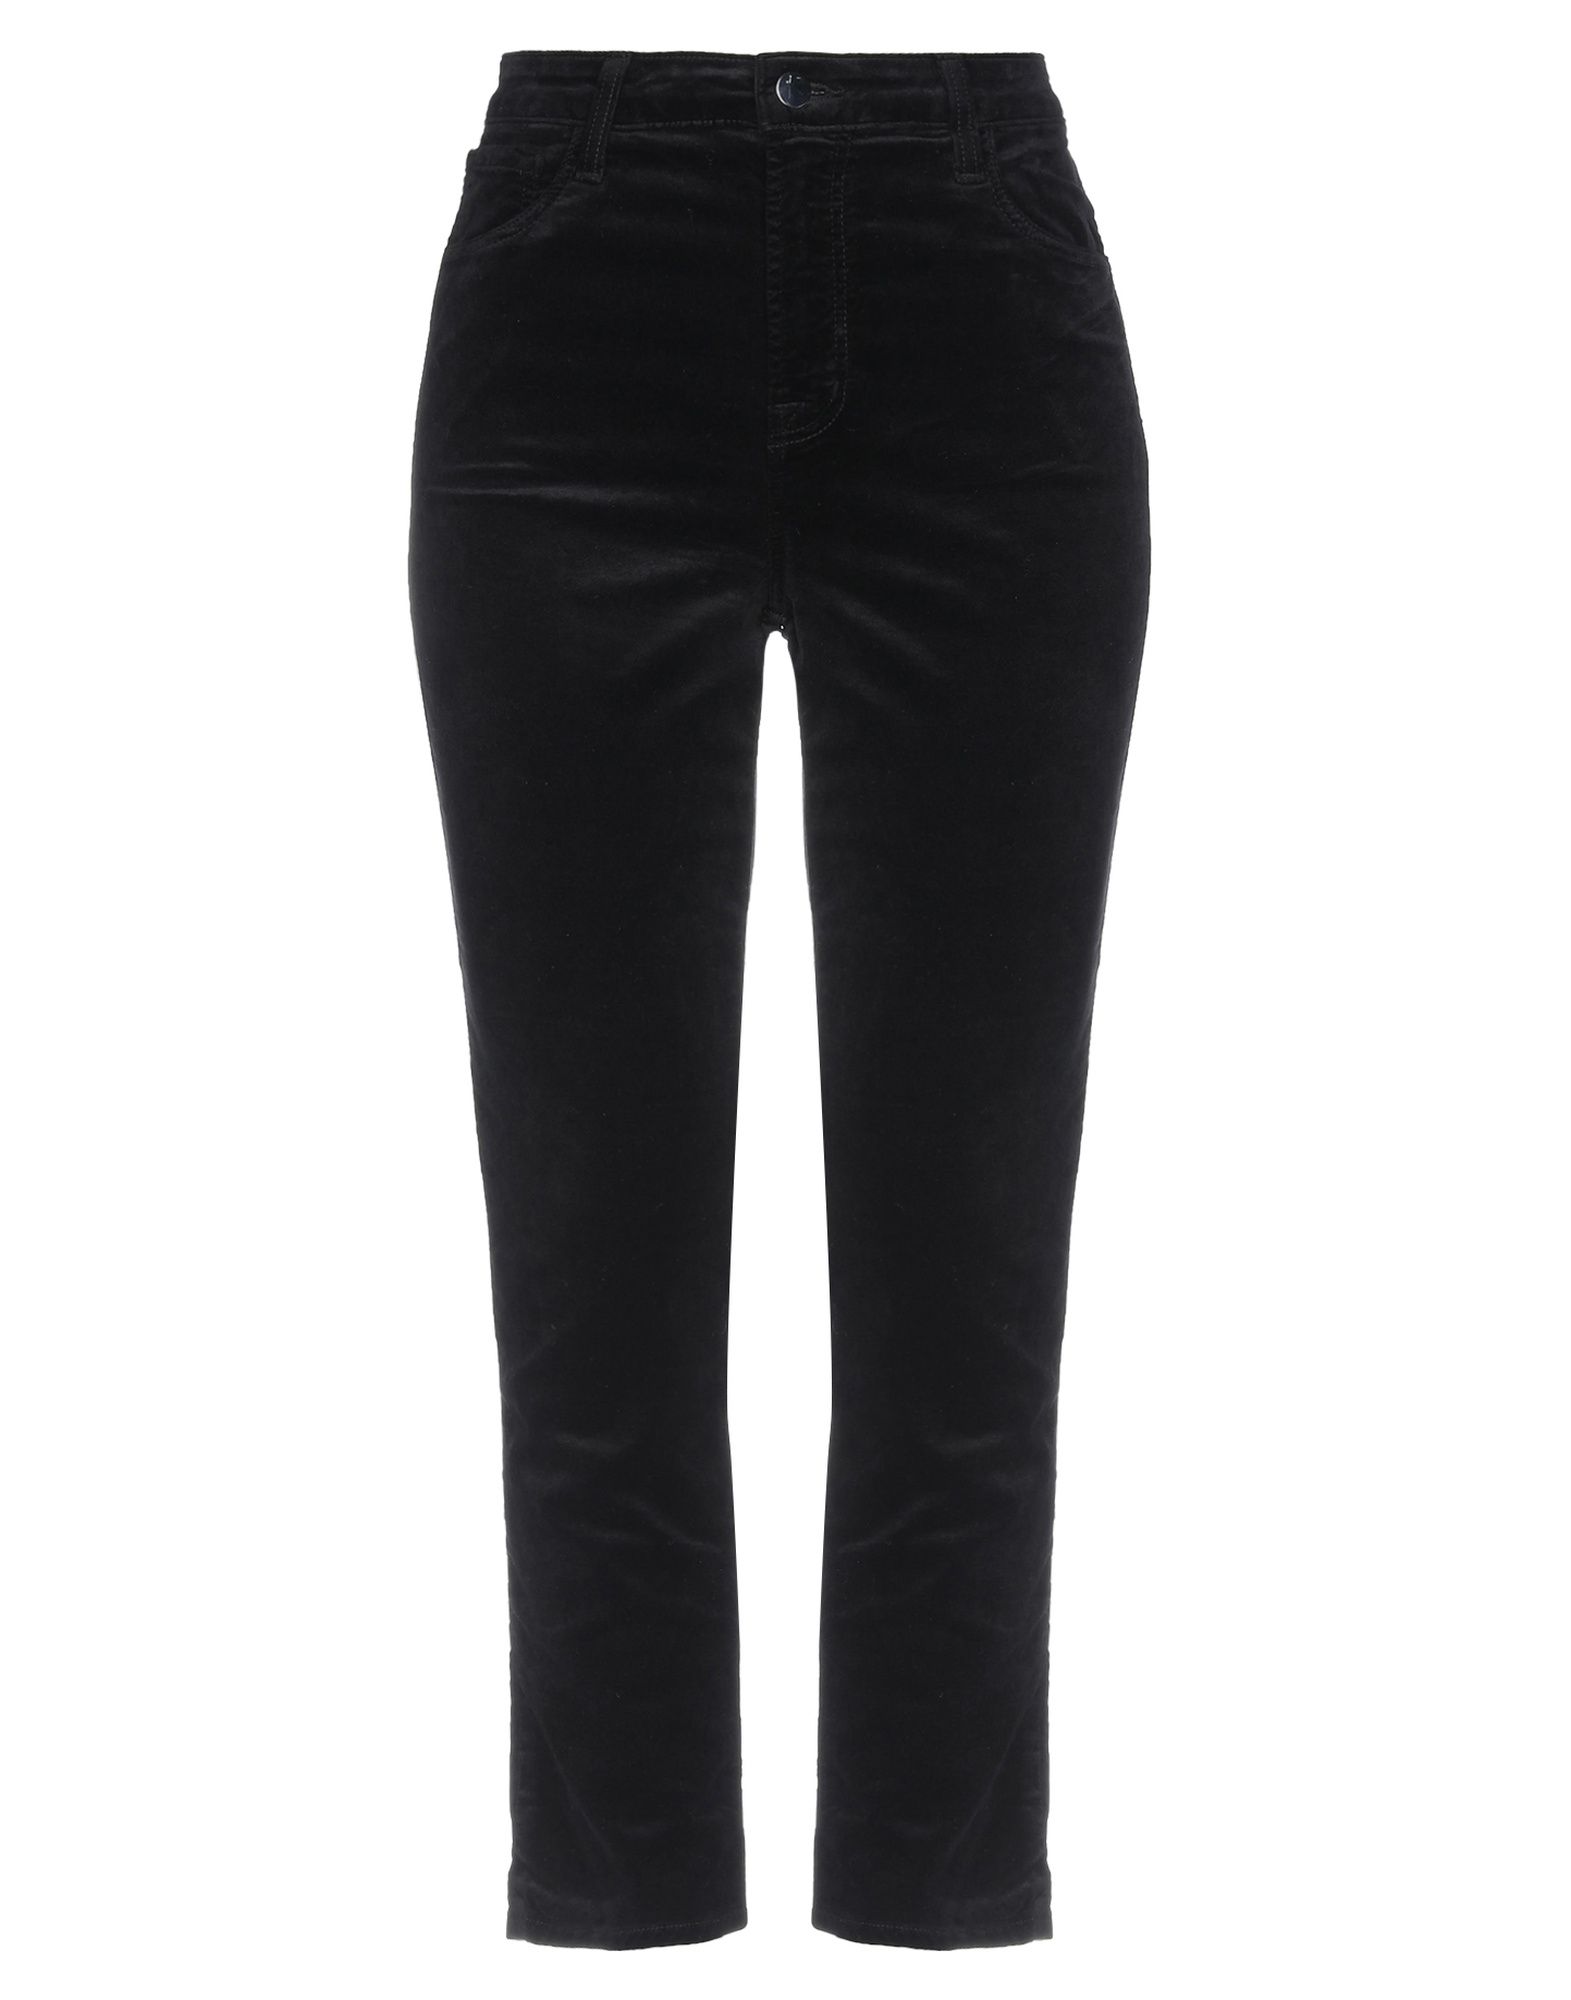 Shop J Brand Woman Pants Black Size 24 Cotton, Modal, Polyester, Polyurethane